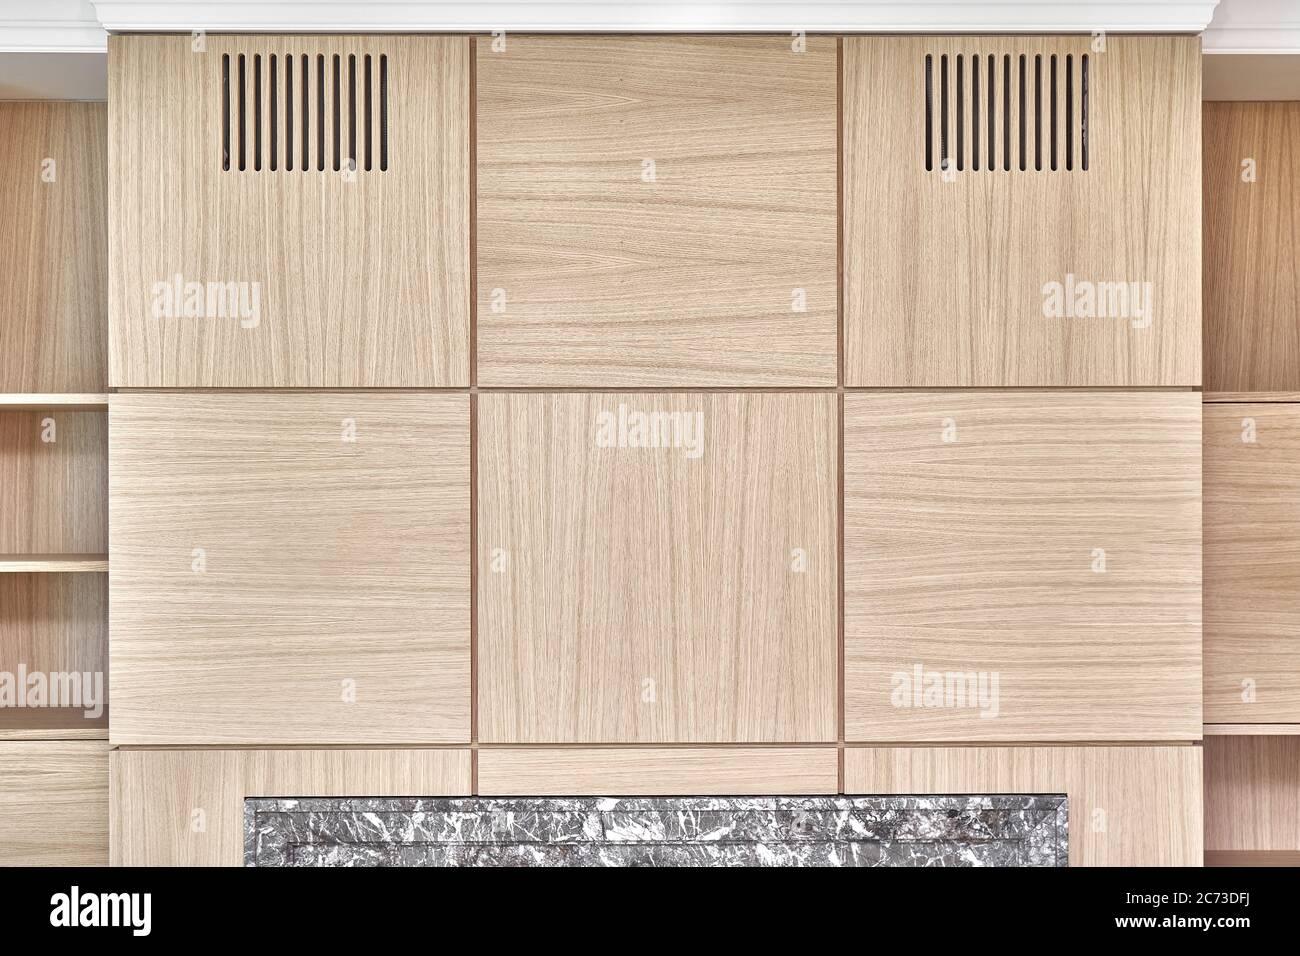 https://c8.alamy.com/compes/2c73dfj/paneles-de-madera-para-paredes-estanterias-de-madera-y-paneles-de-pared-de-madera-de-roble-de-chapa-mdf-primer-plano-2c73dfj.jpg